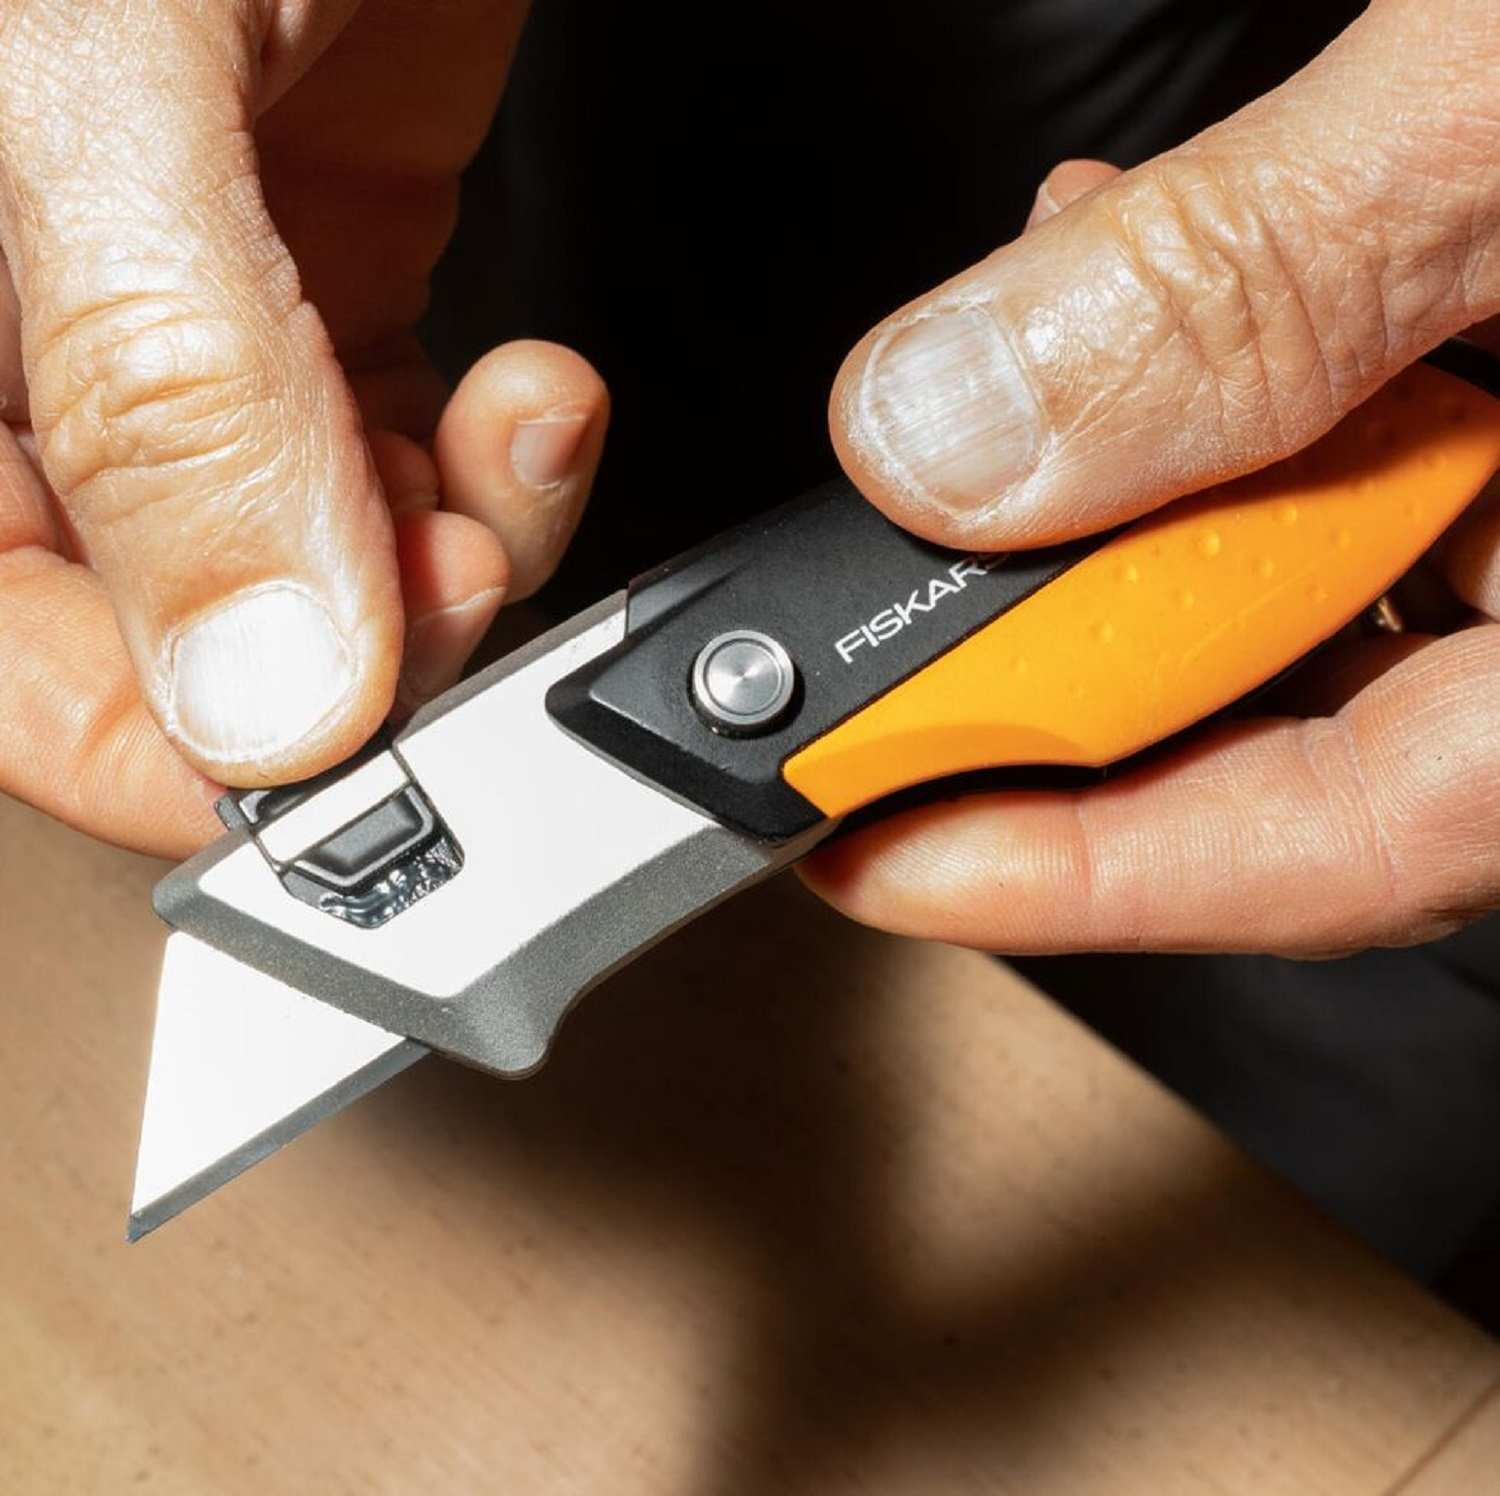 Trên con dao Fiskars Pro, một chốt đơn giản ở mũi cho phép tiếp cận lưỡi dao mà không cần dụng cụ. Kéo chốt lên sẽ mở khóa lưỡi dao, cho phép bạn trượt nó ra.